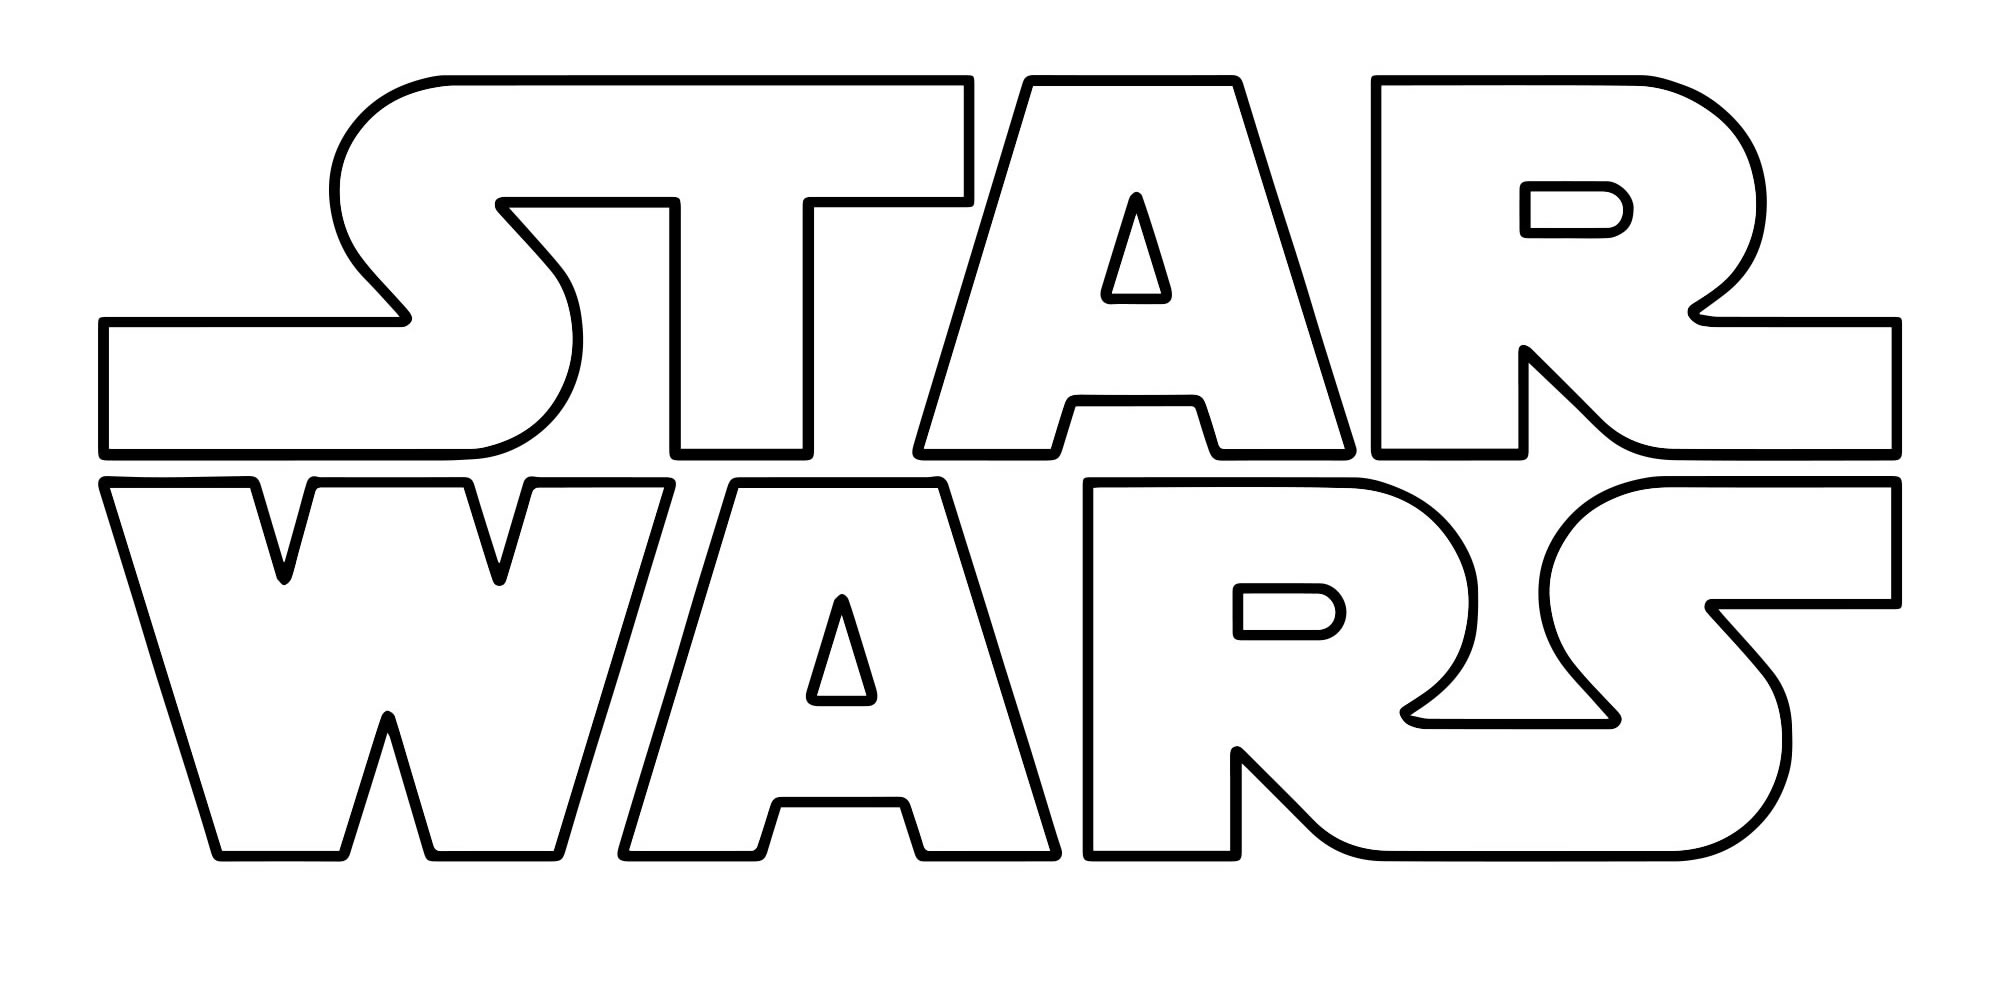 Логотип Звёздные войны раскраска для детей